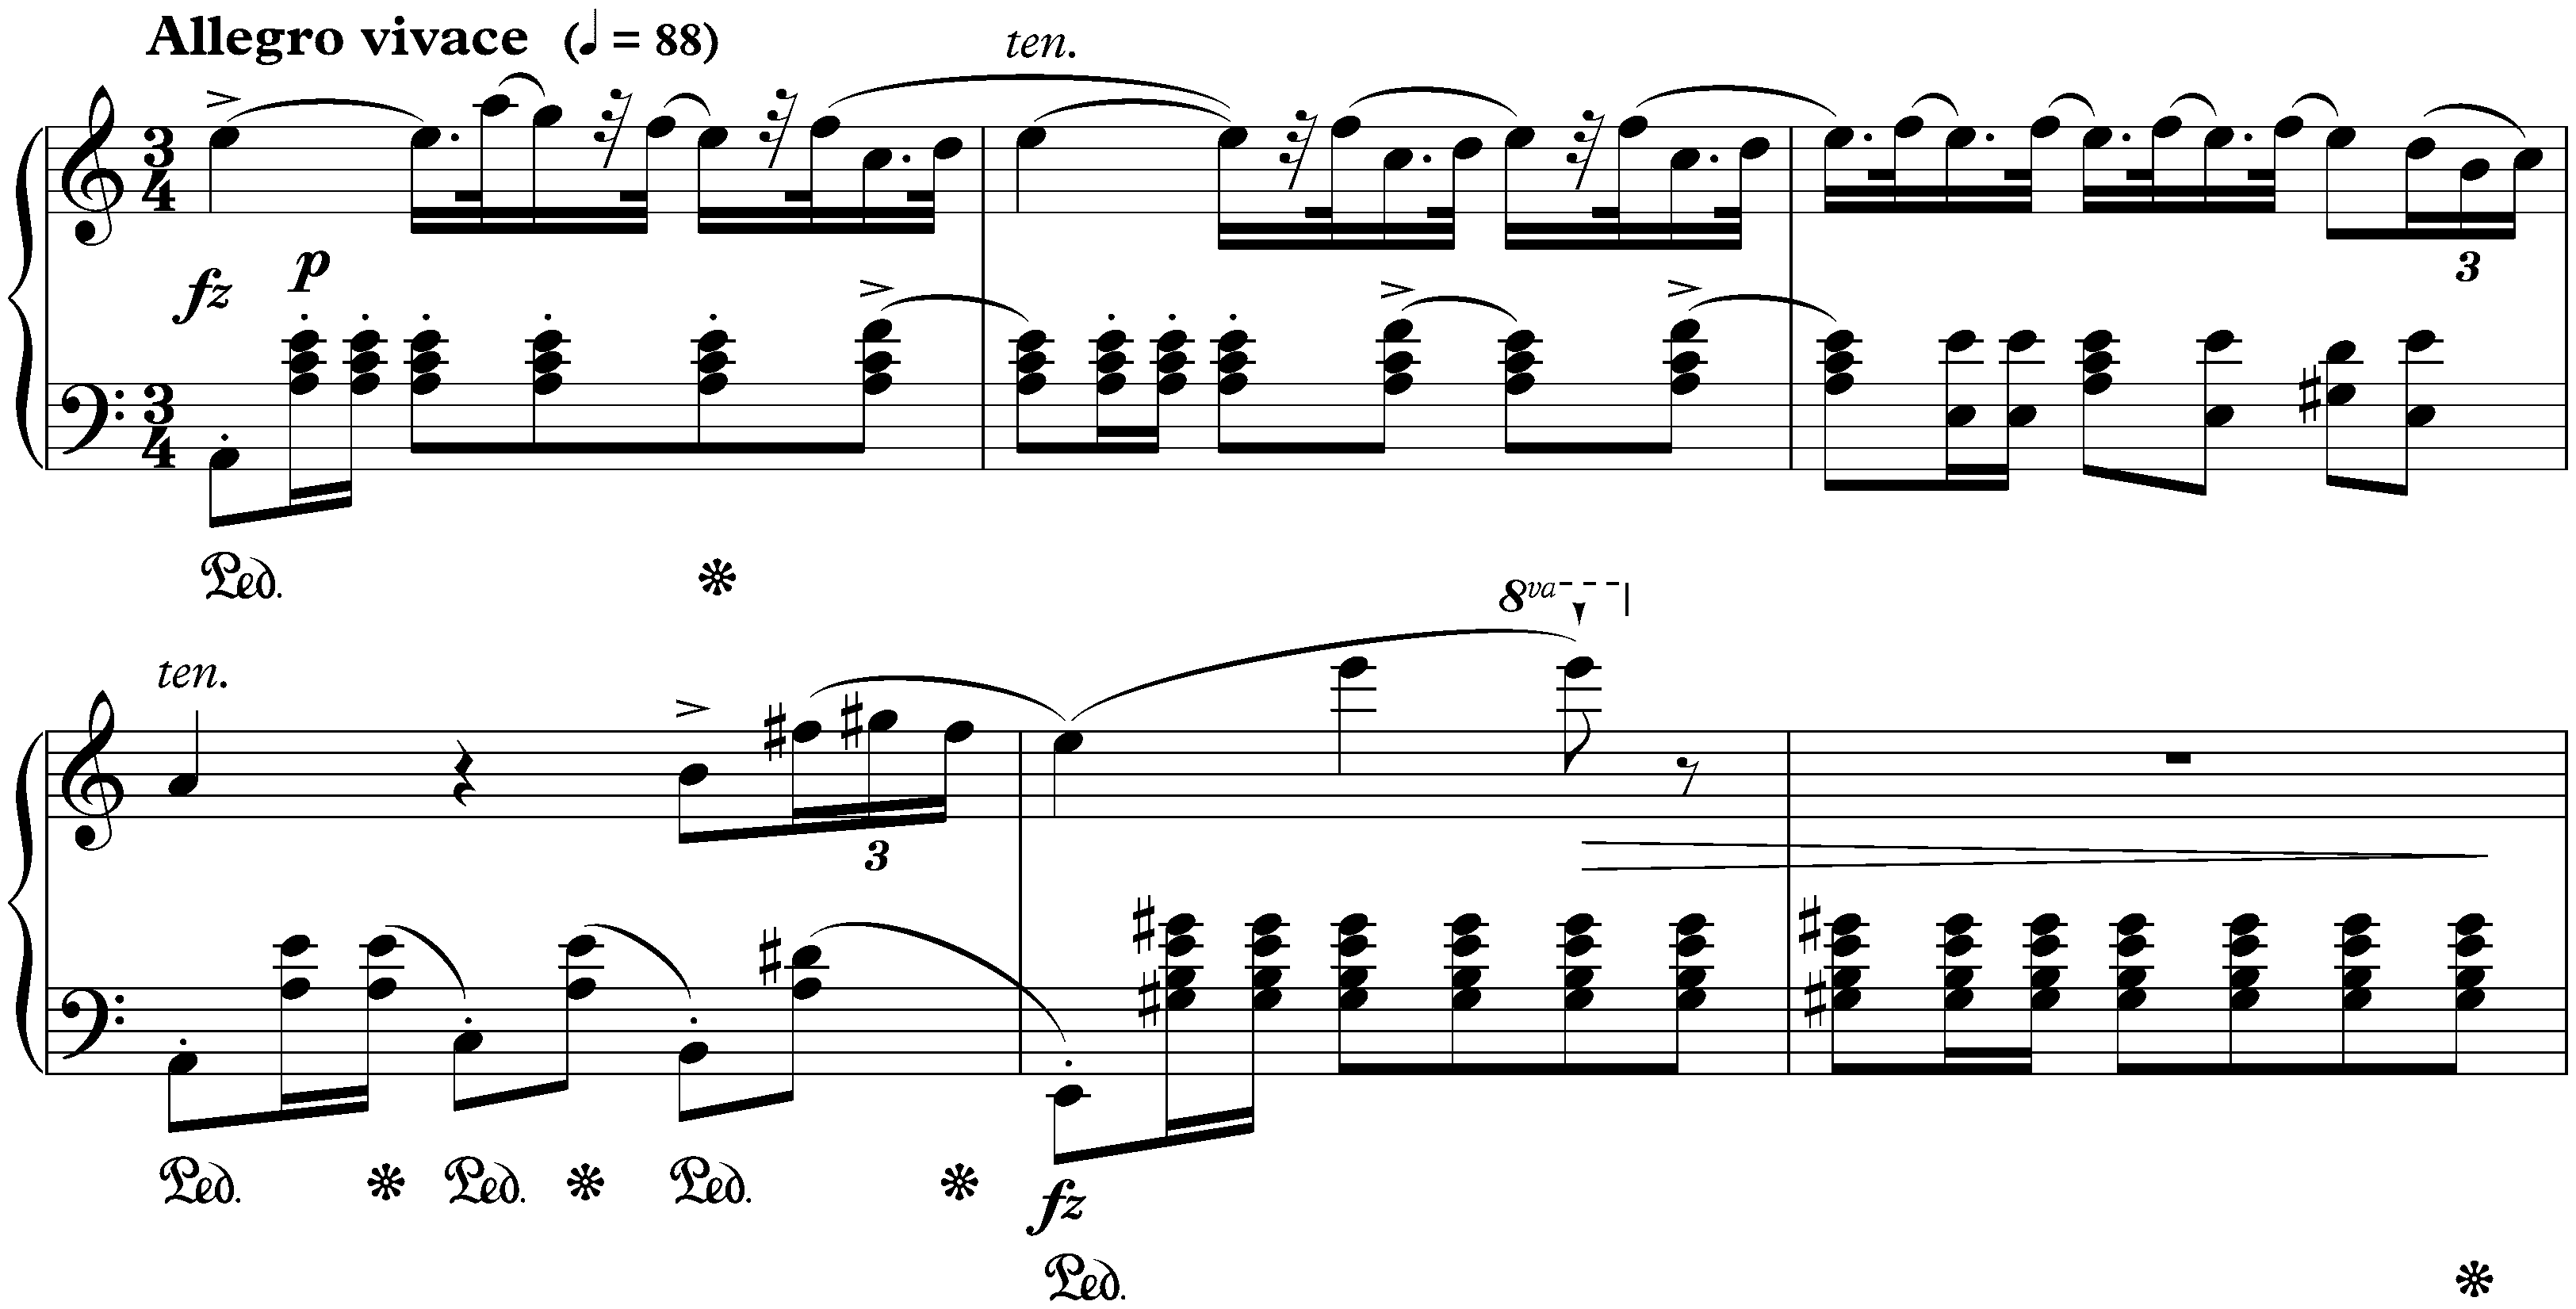 Bolero in A minor, op. 19